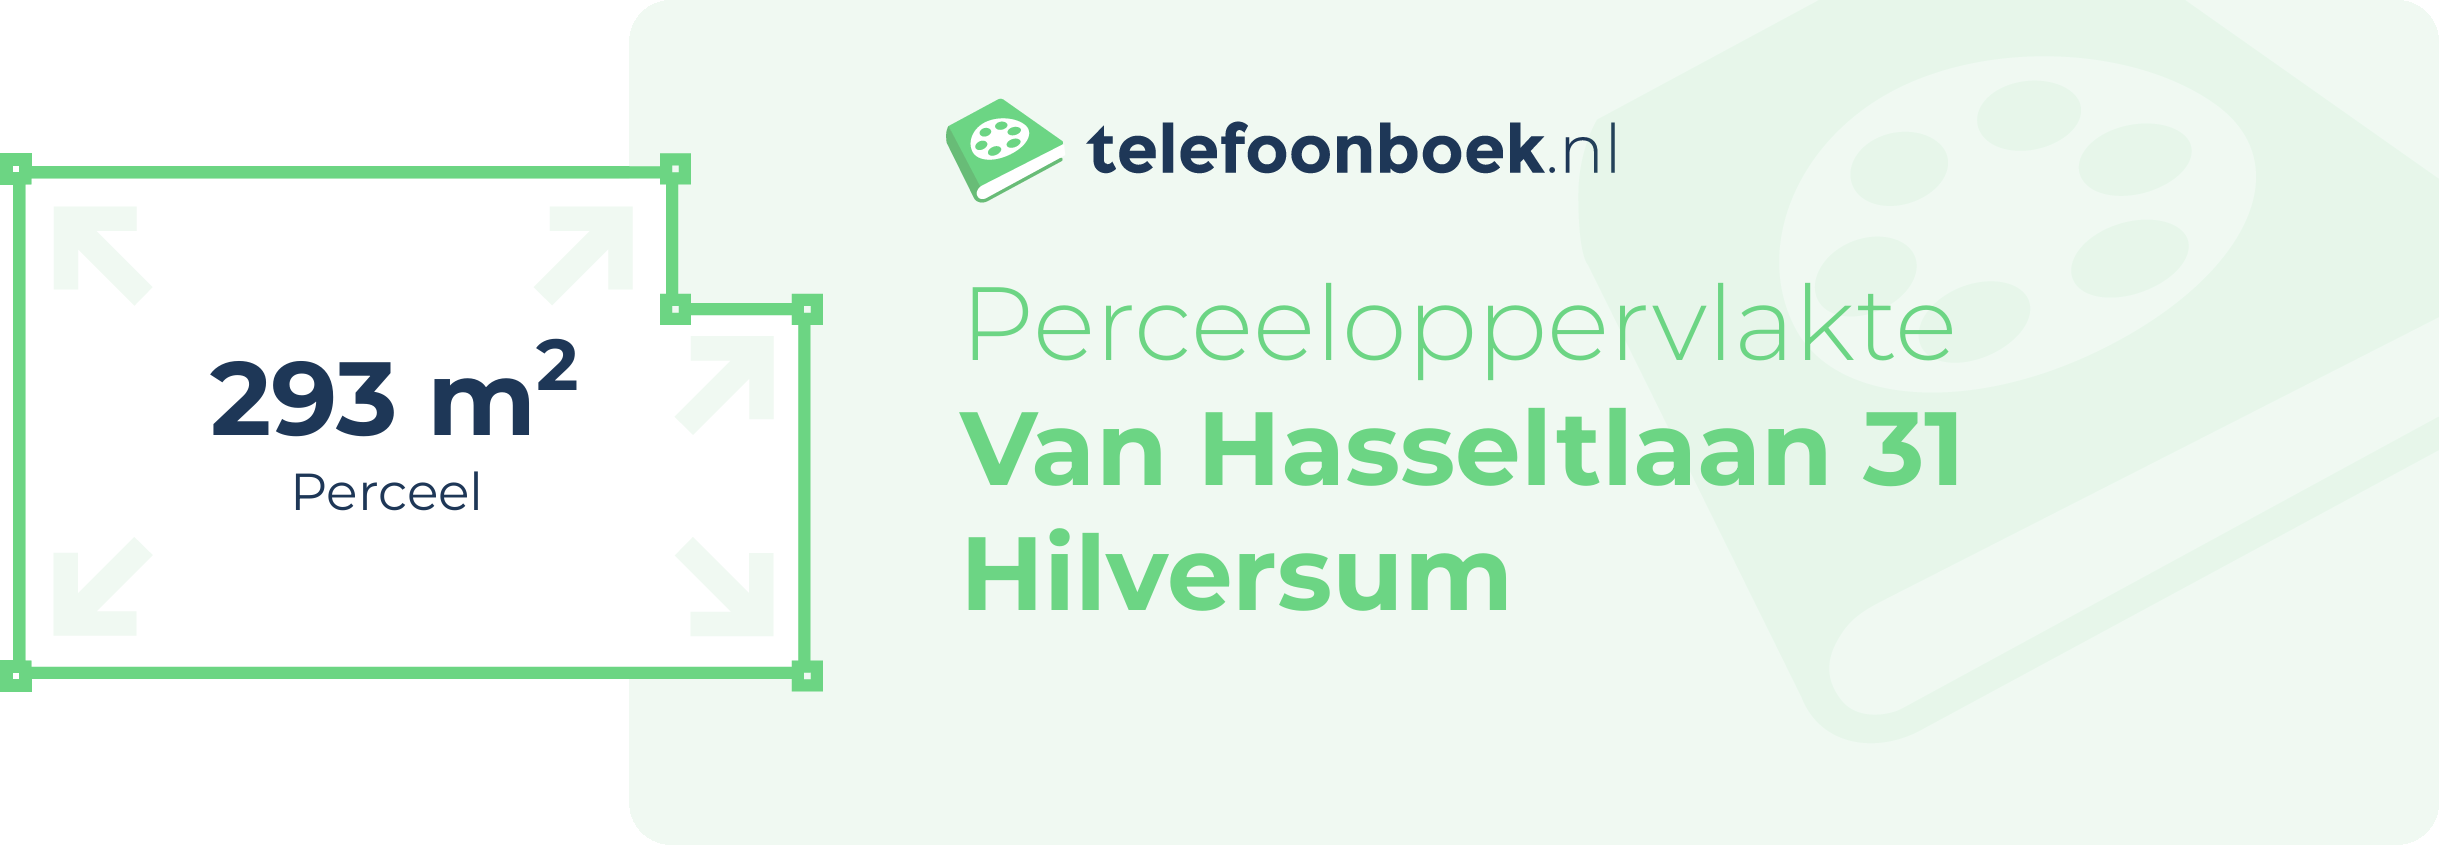 Perceeloppervlakte Van Hasseltlaan 31 Hilversum